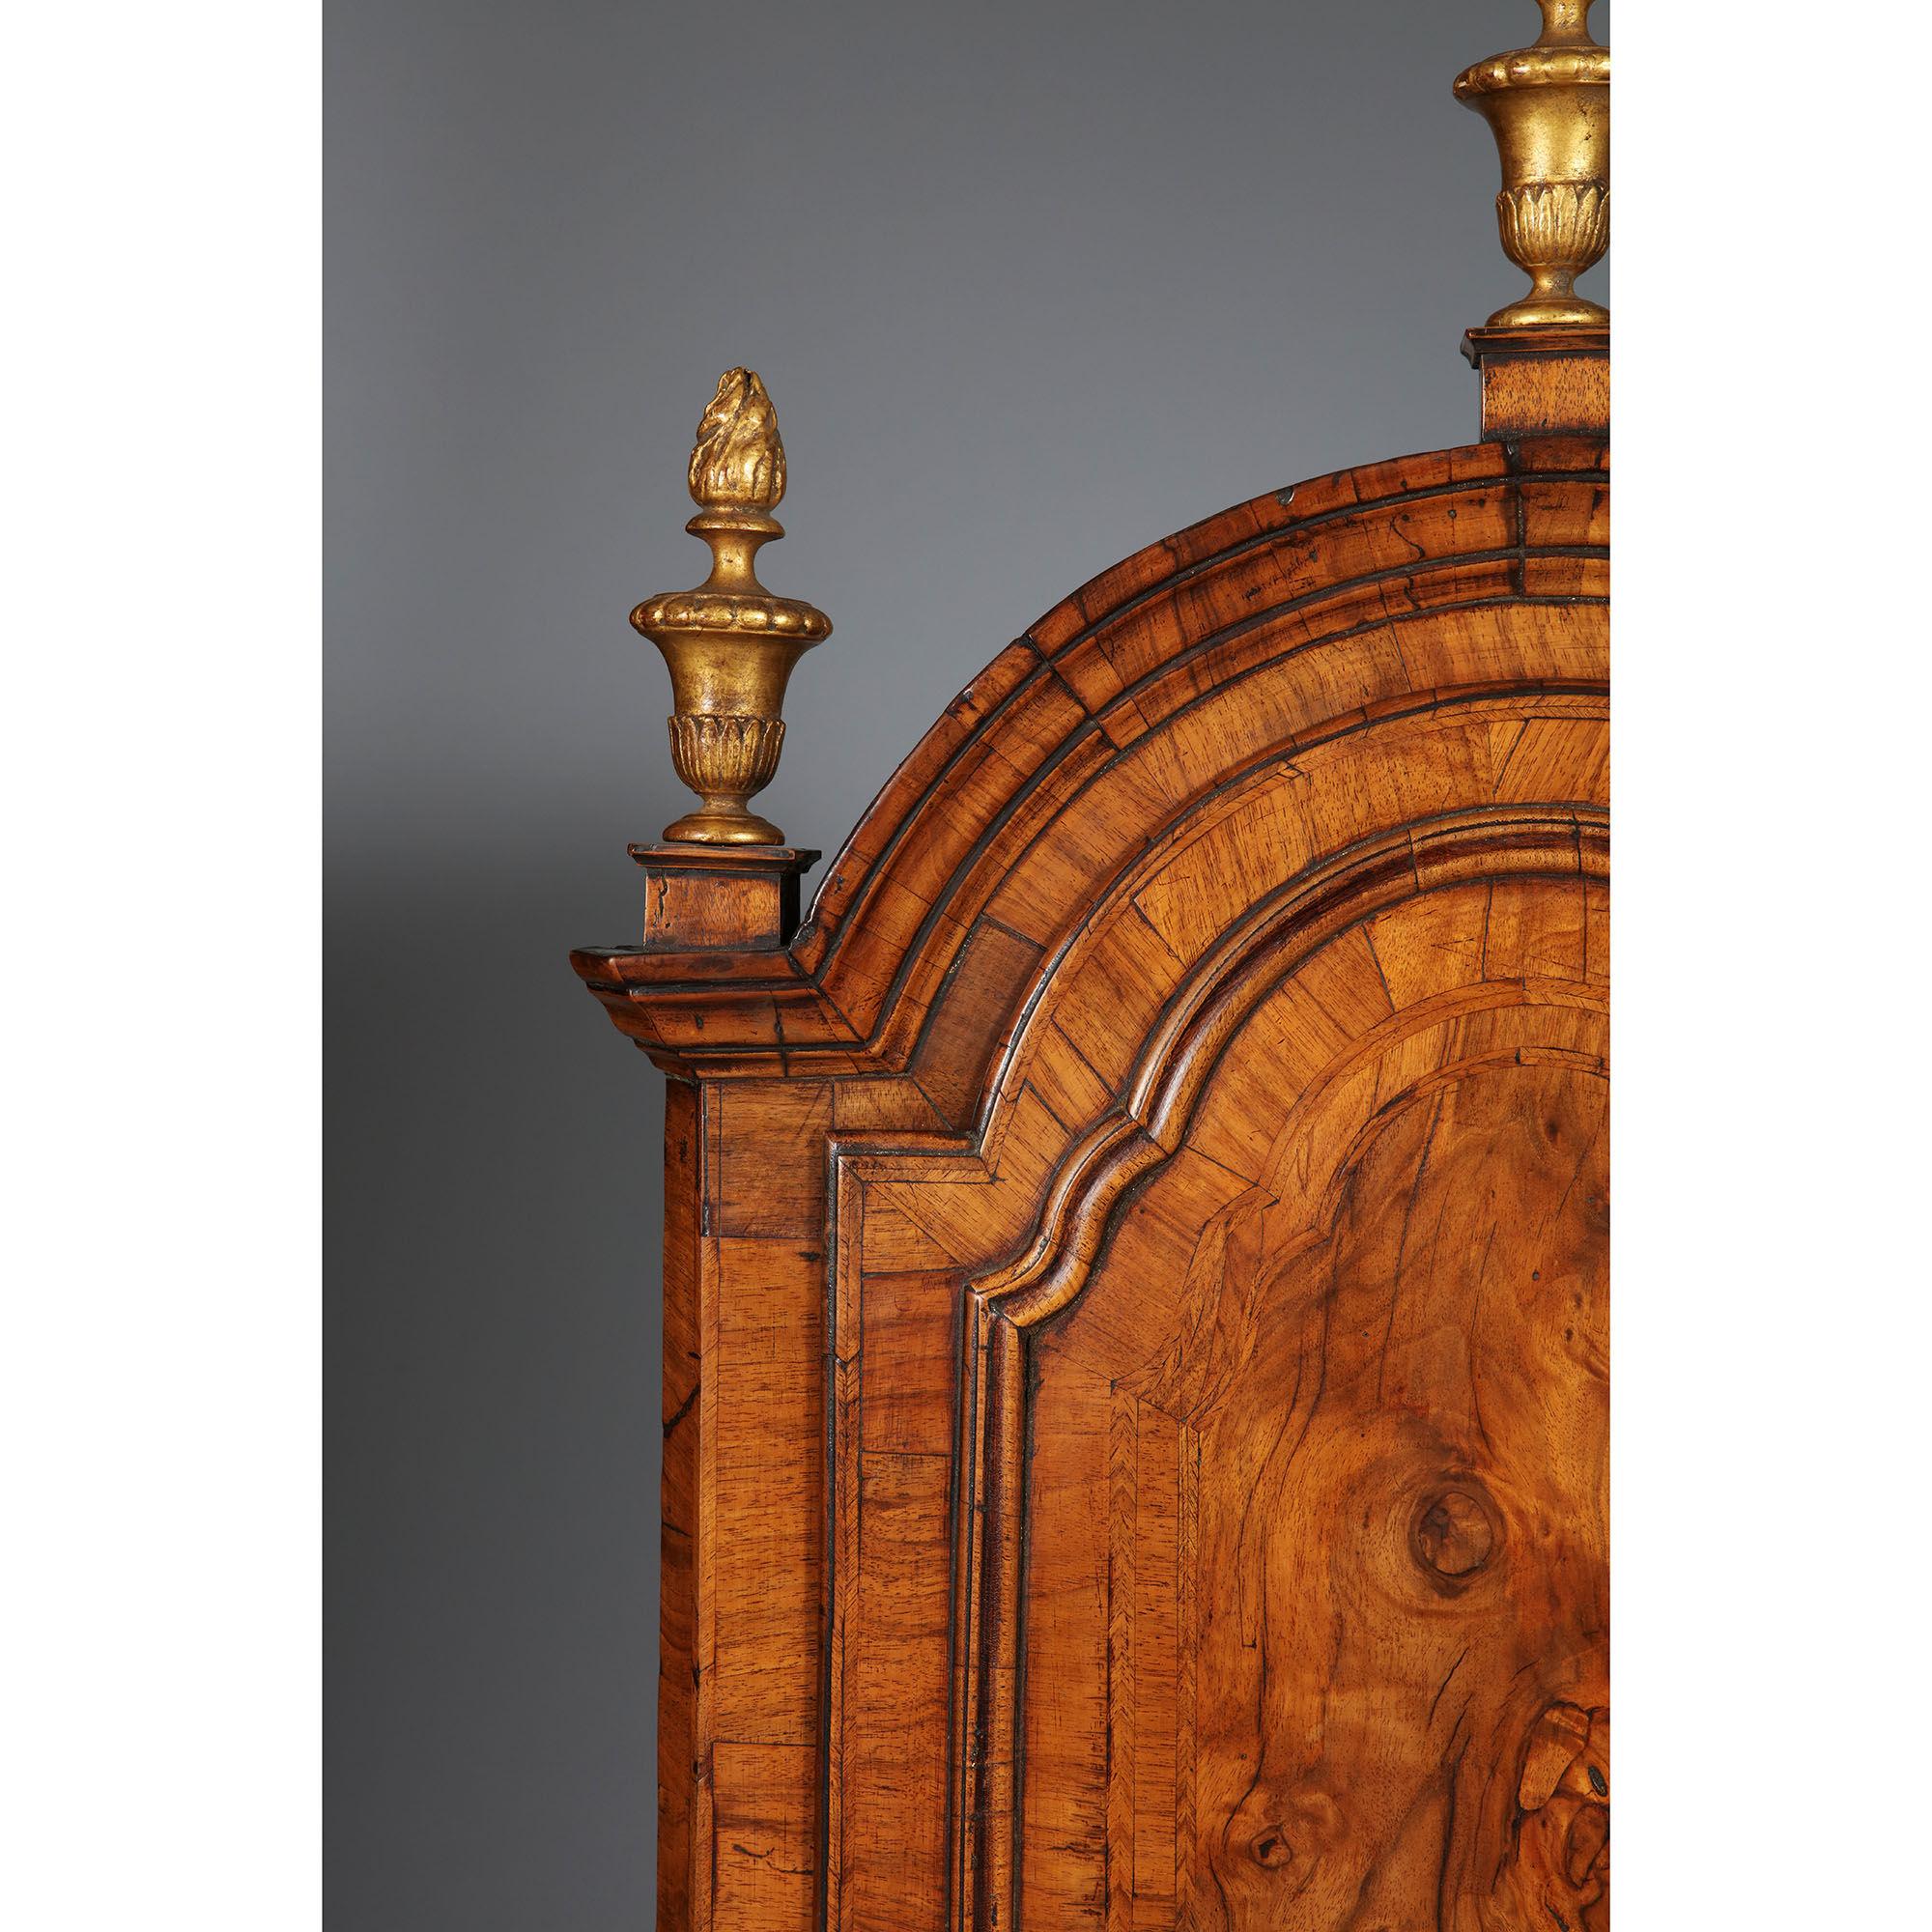 Ein hervorragender und seltener Queen Anne (1702-1714) Kuppel-Eckschrank mit geschnitzten Vergoldungsknäufen.

Wenn man beginnt, die vom Designer/Schreiner eingesetzten Details aufzuschlüsseln, zeigt sich, wie versiert die technischen Aspekte